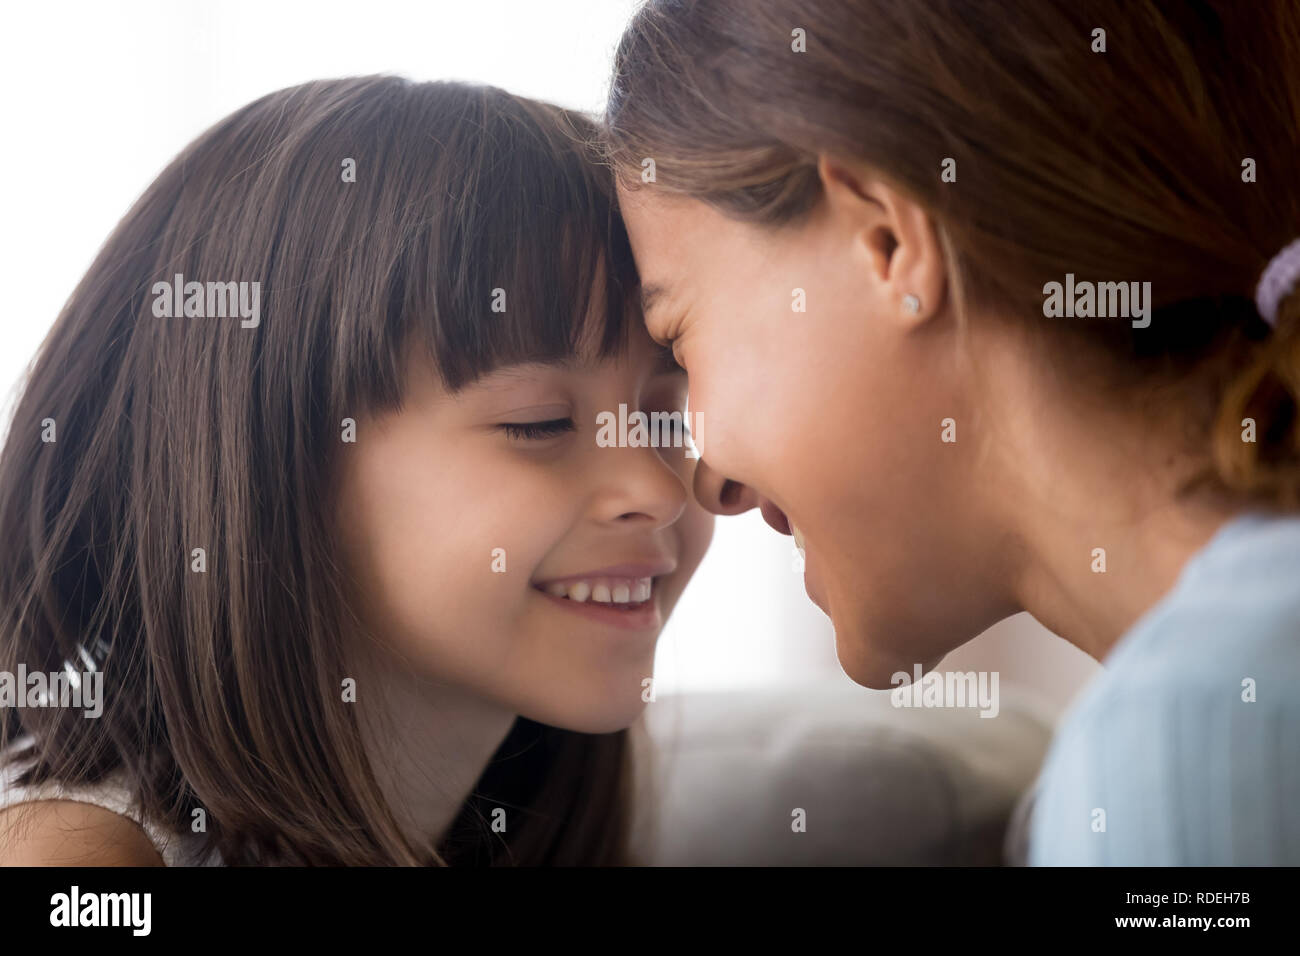 Lächelnd Kind Mädchen zärtlich Stirn berühren mit glücklich Stockfoto